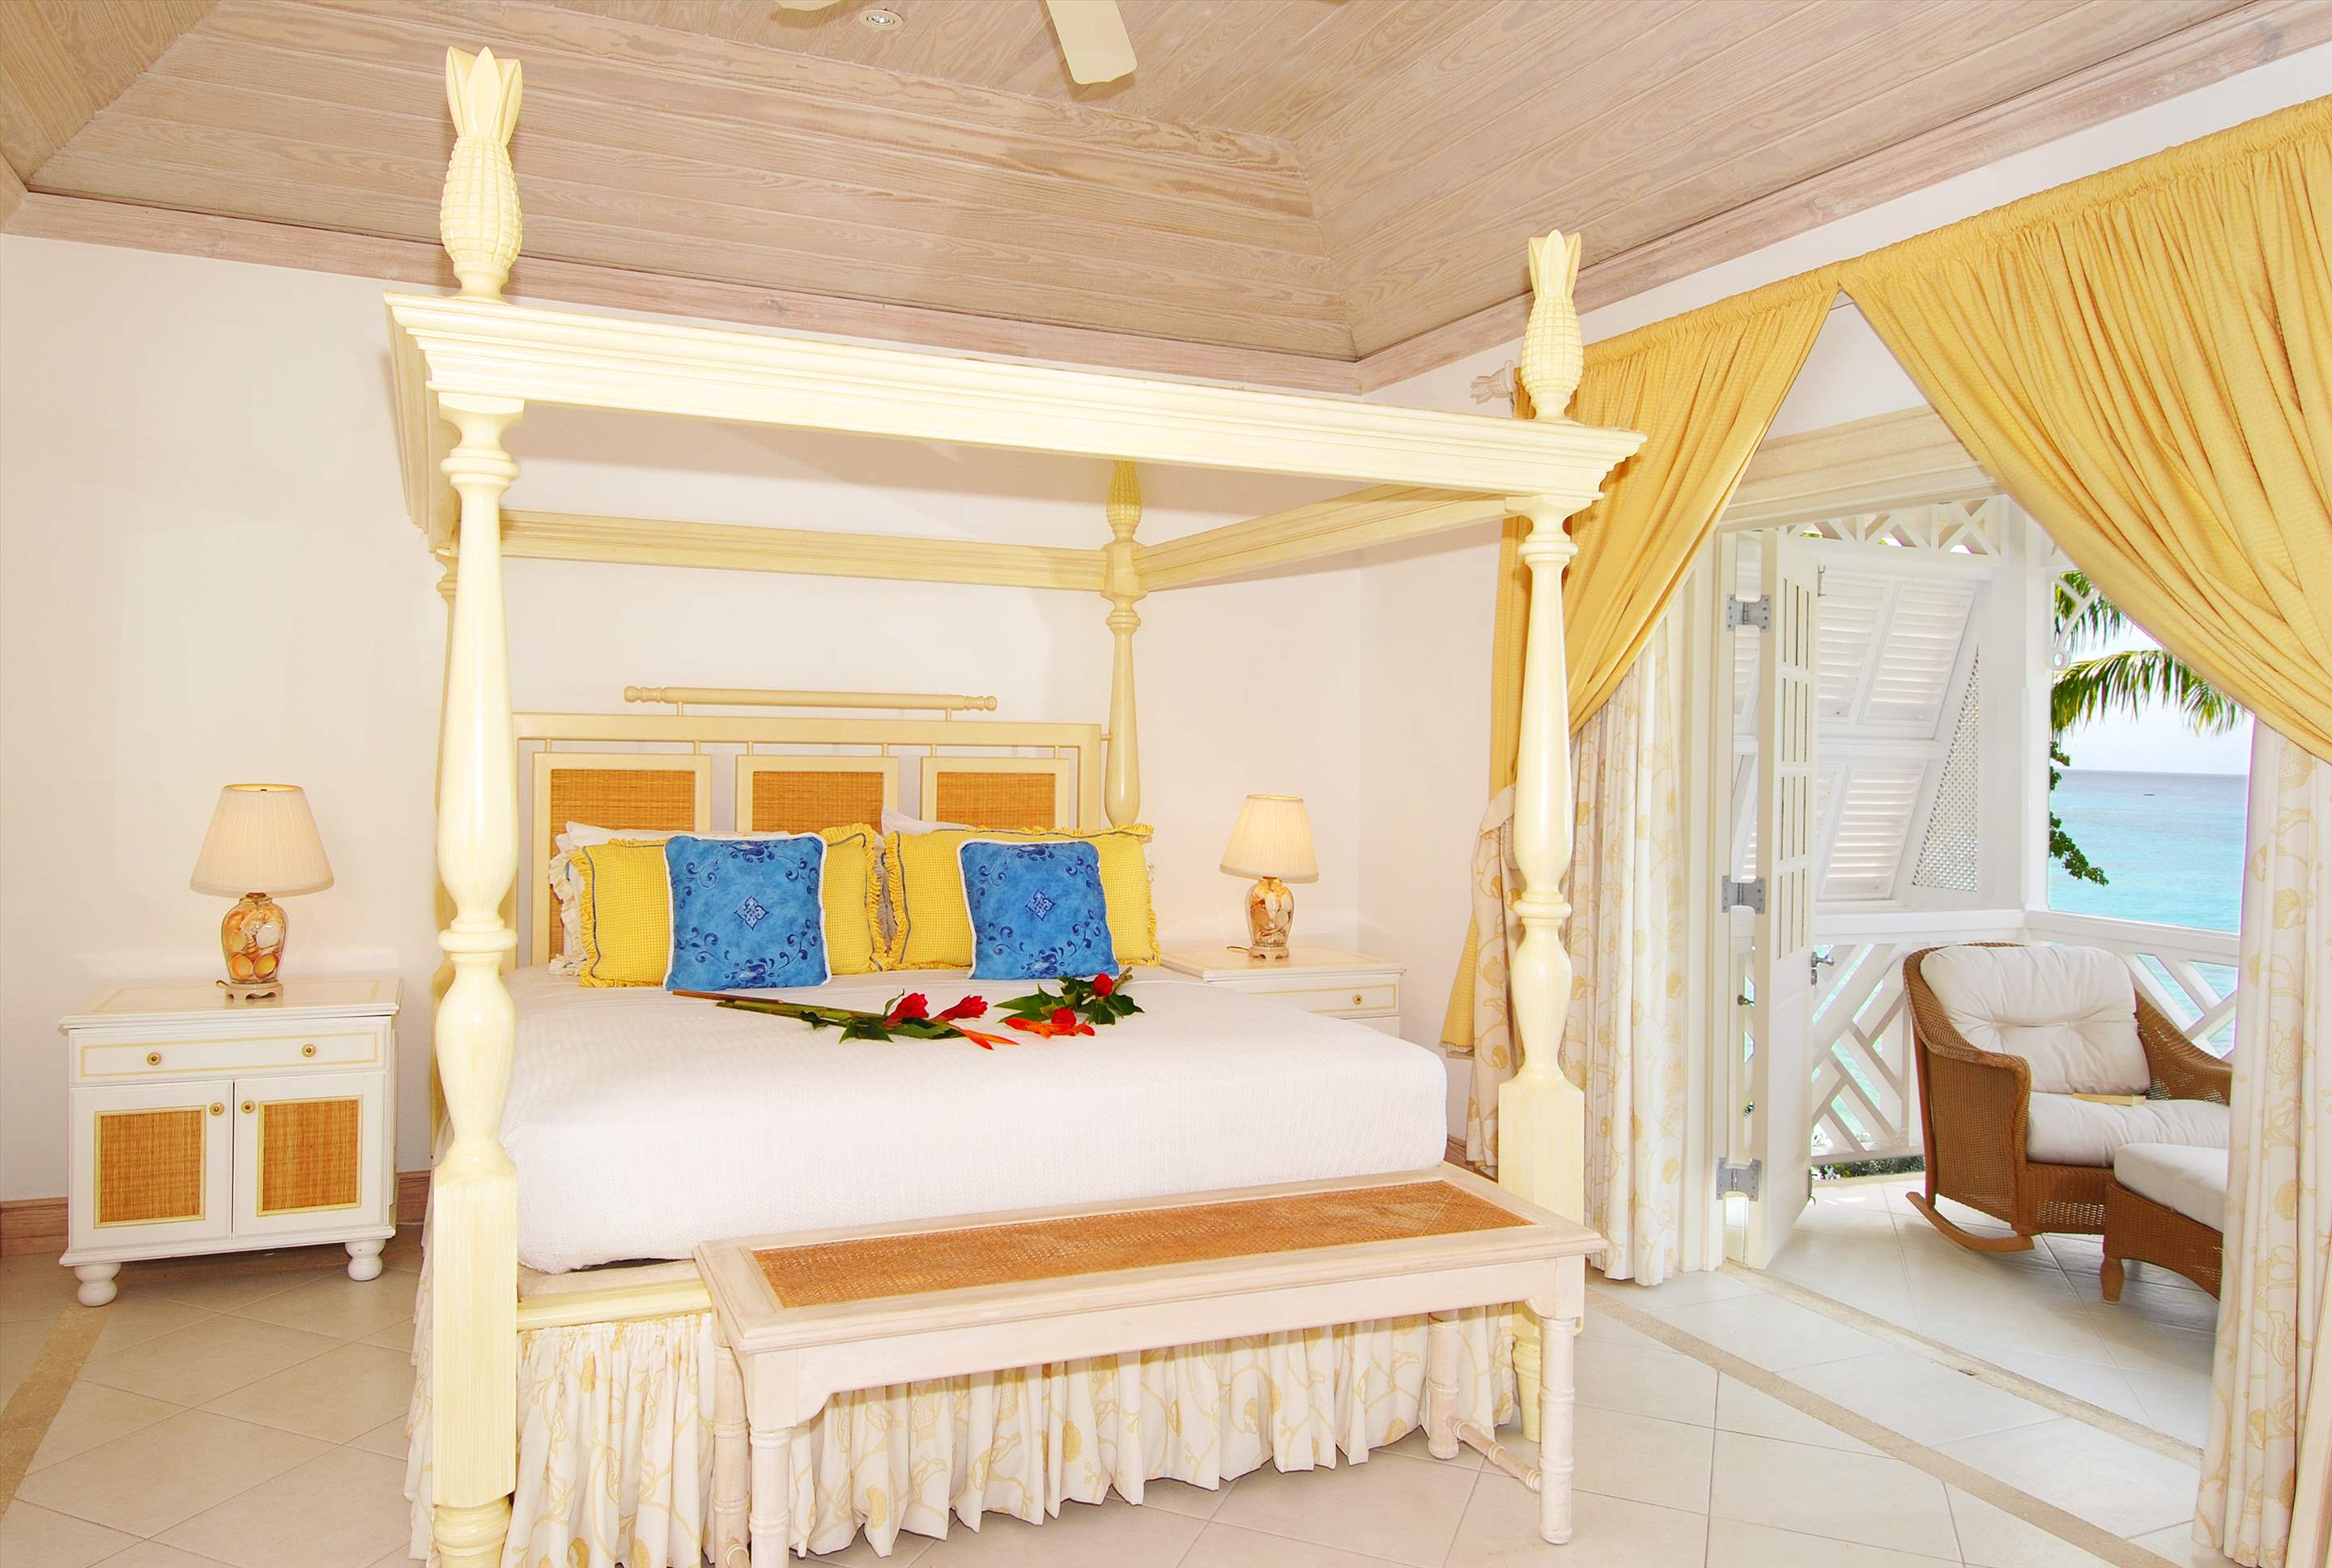 Fathom's End, 3 bedroom villa in St. James & West Coast, Barbados Photo #12